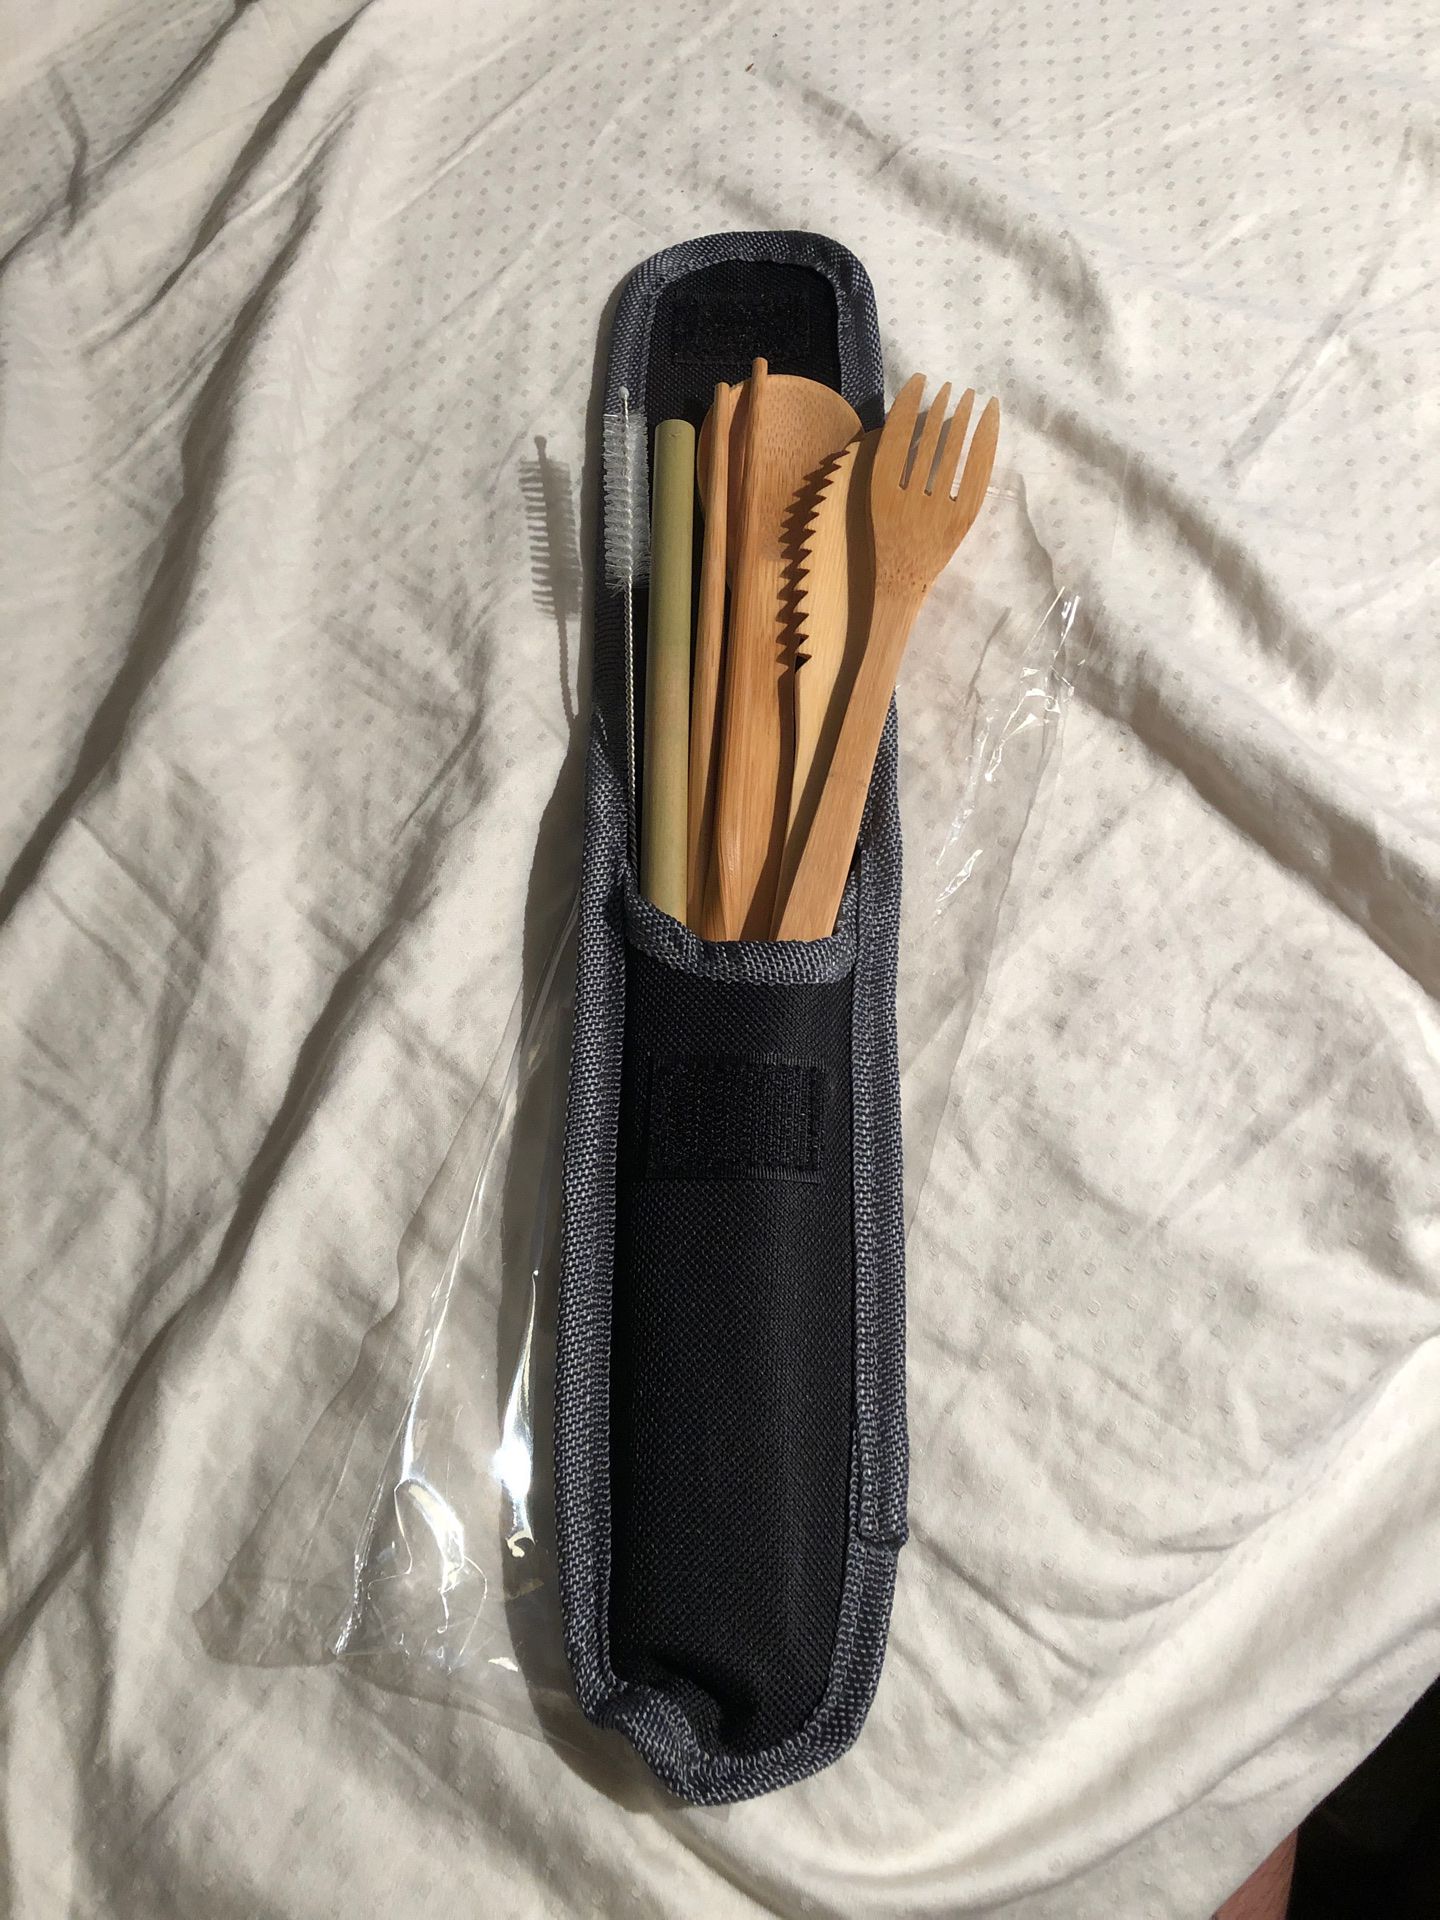 Bamboo utensil set